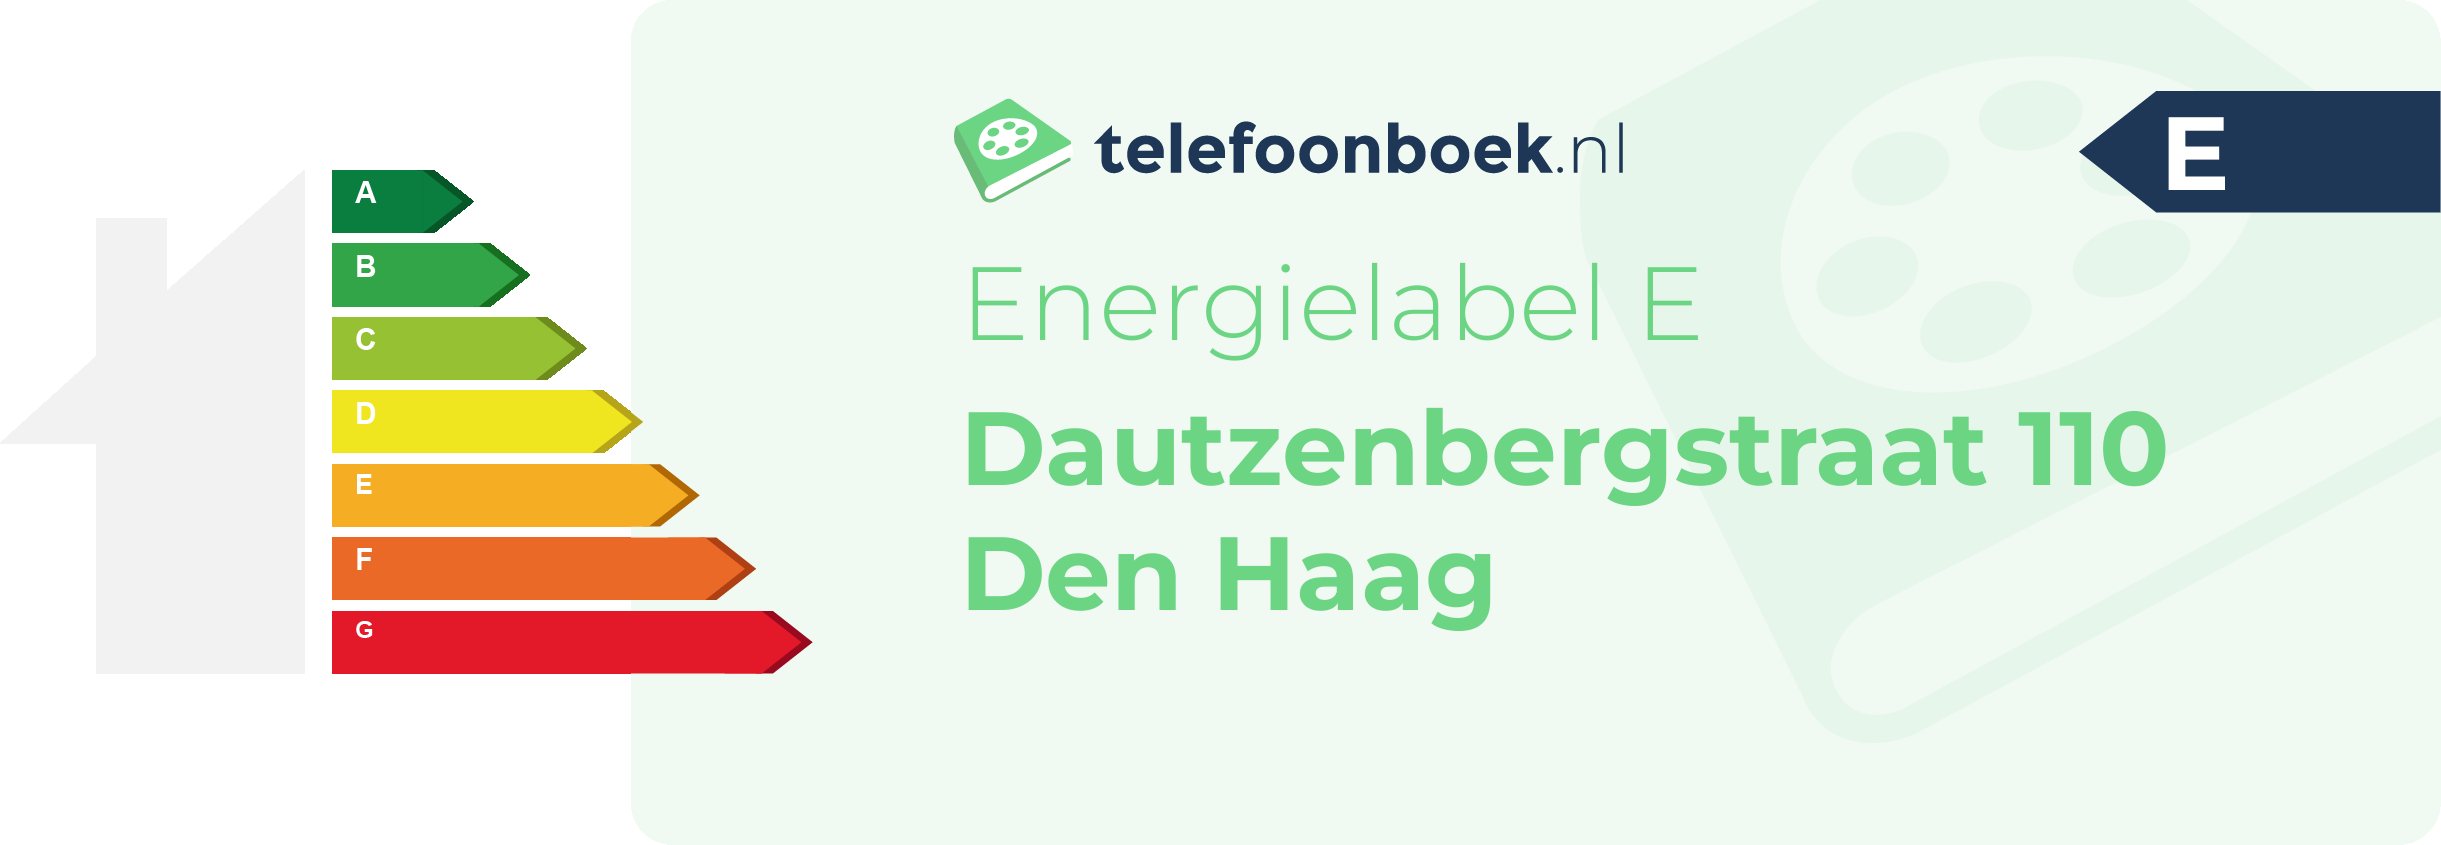 Energielabel Dautzenbergstraat 110 Den Haag